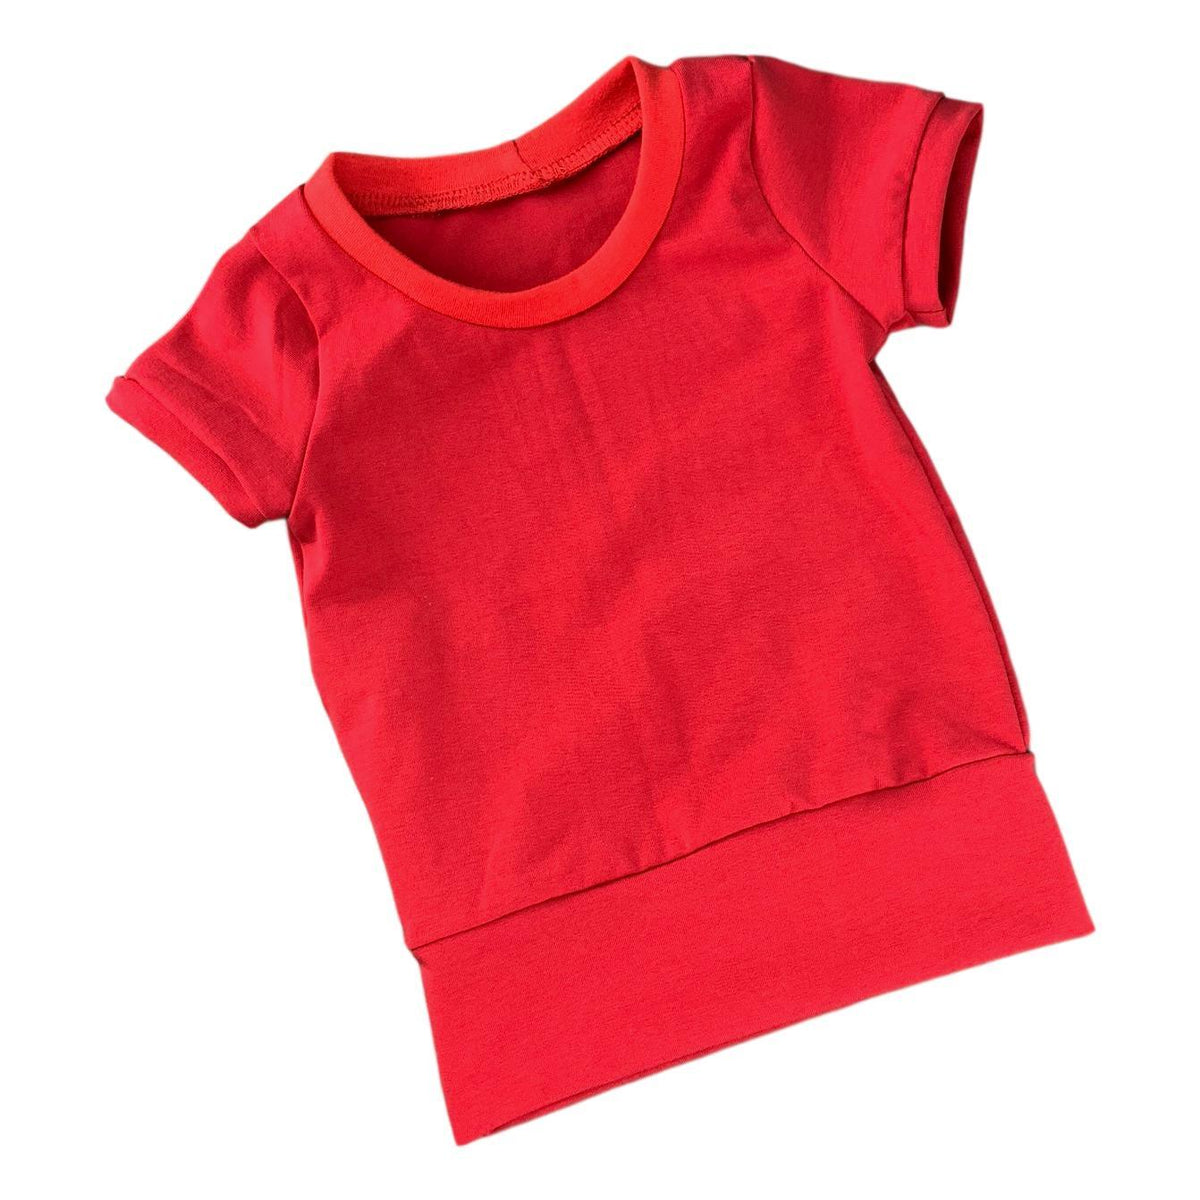 M3 | T-shirt évolutif uni | Rouge (3-12M) - Créations M3